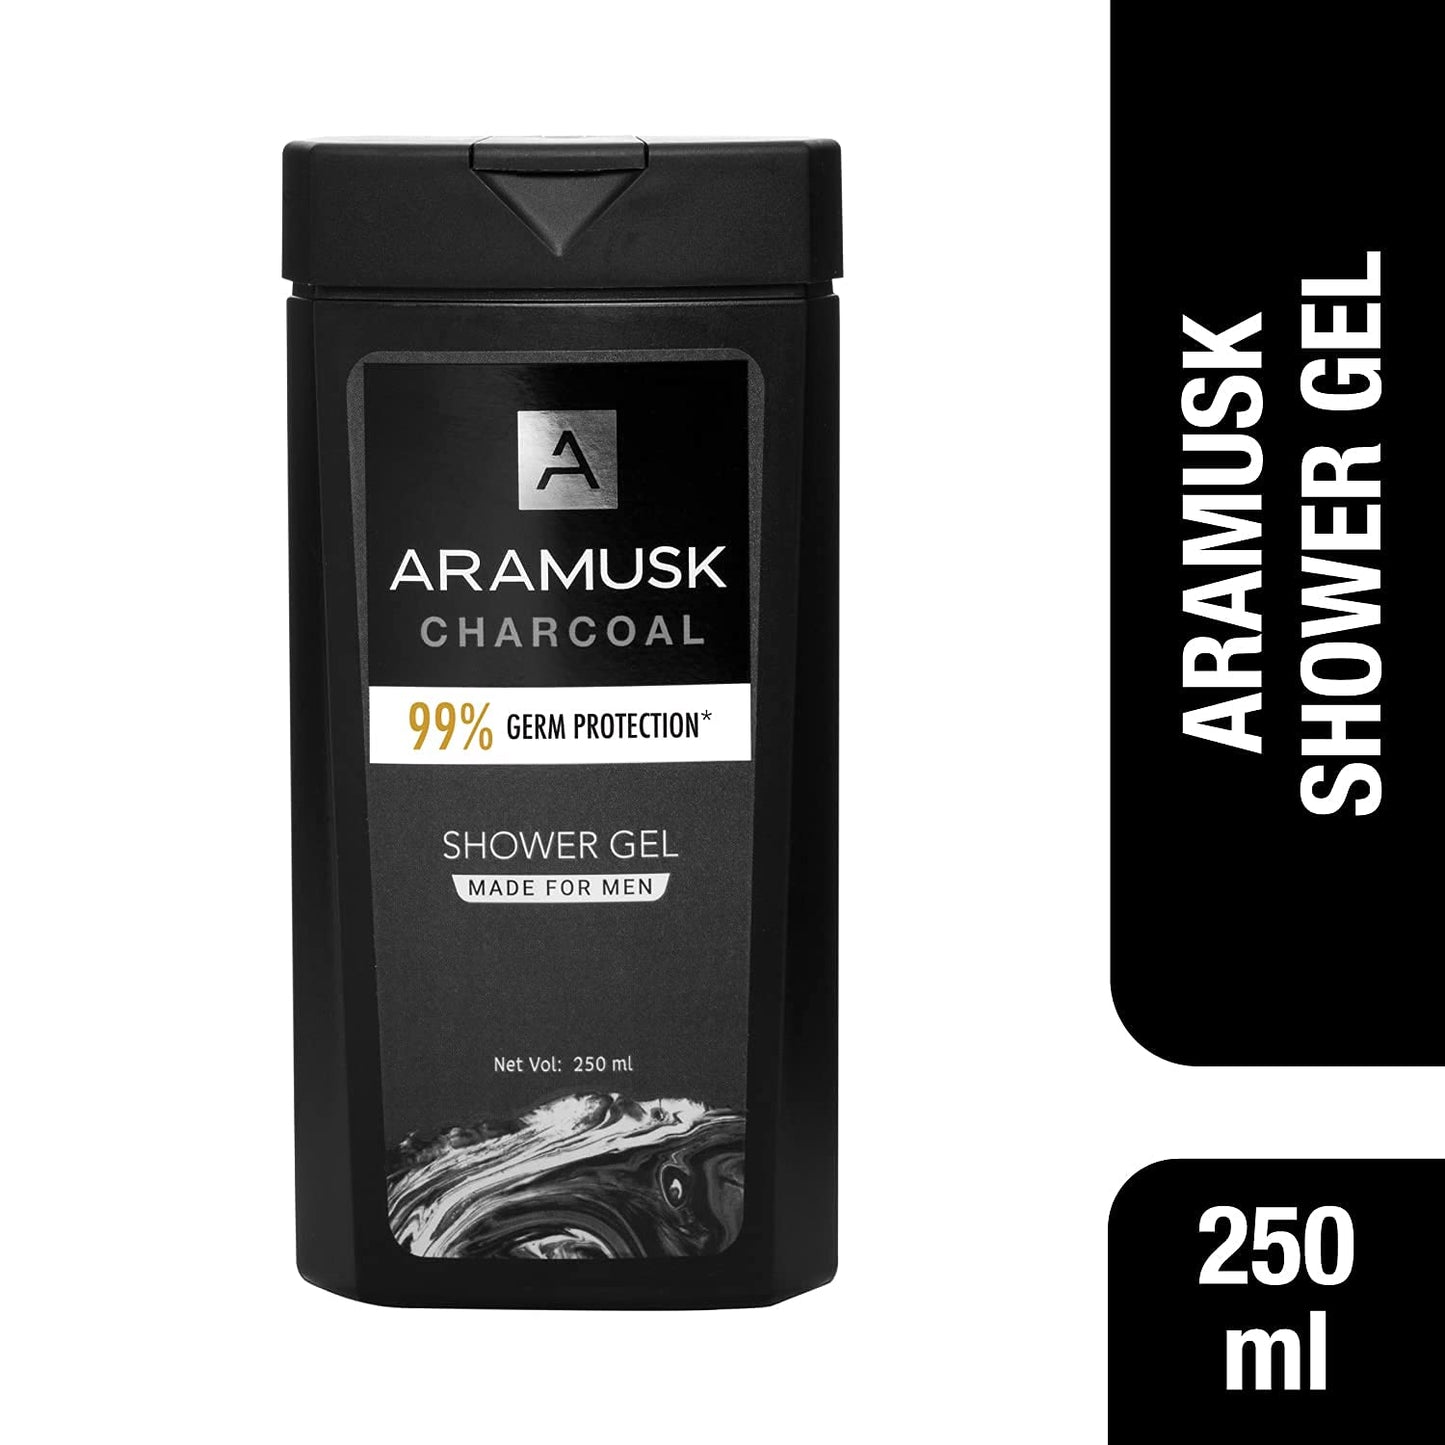 Aramusk Charcoal Shower Gel Made For Men 250ml